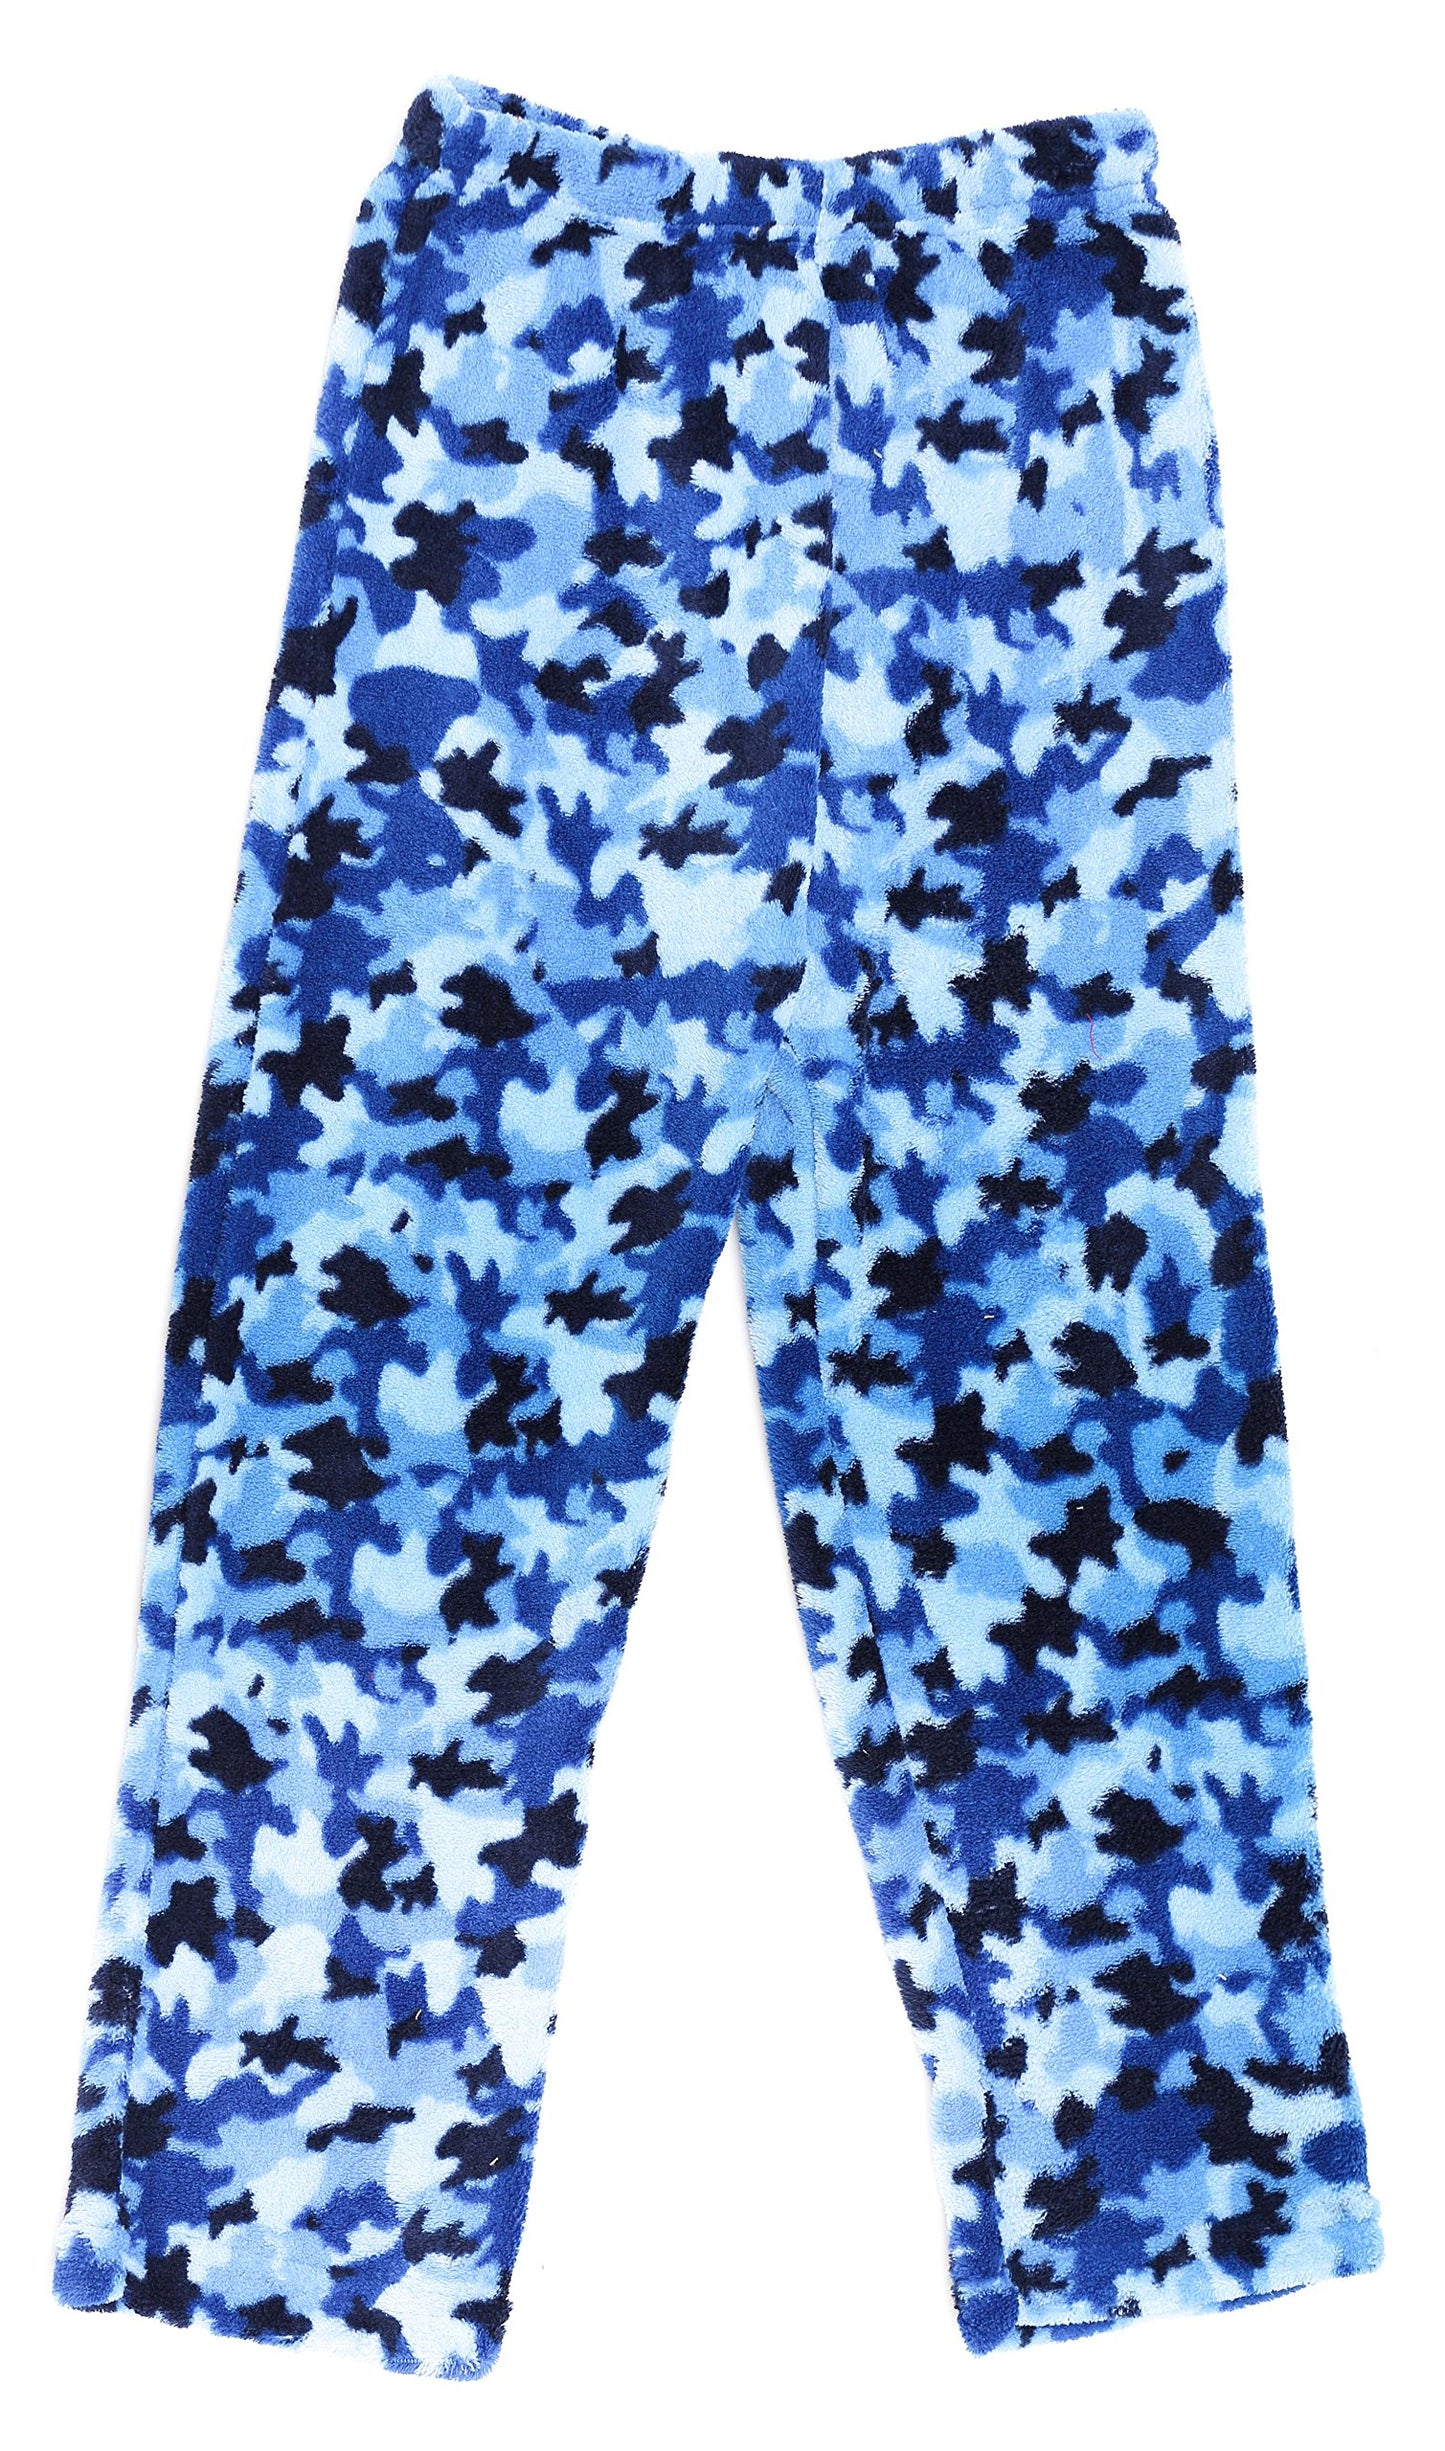 PRINCE OF SLEEP Plush Pajama Pants - Fleece PJs for Boys 5-6 Years